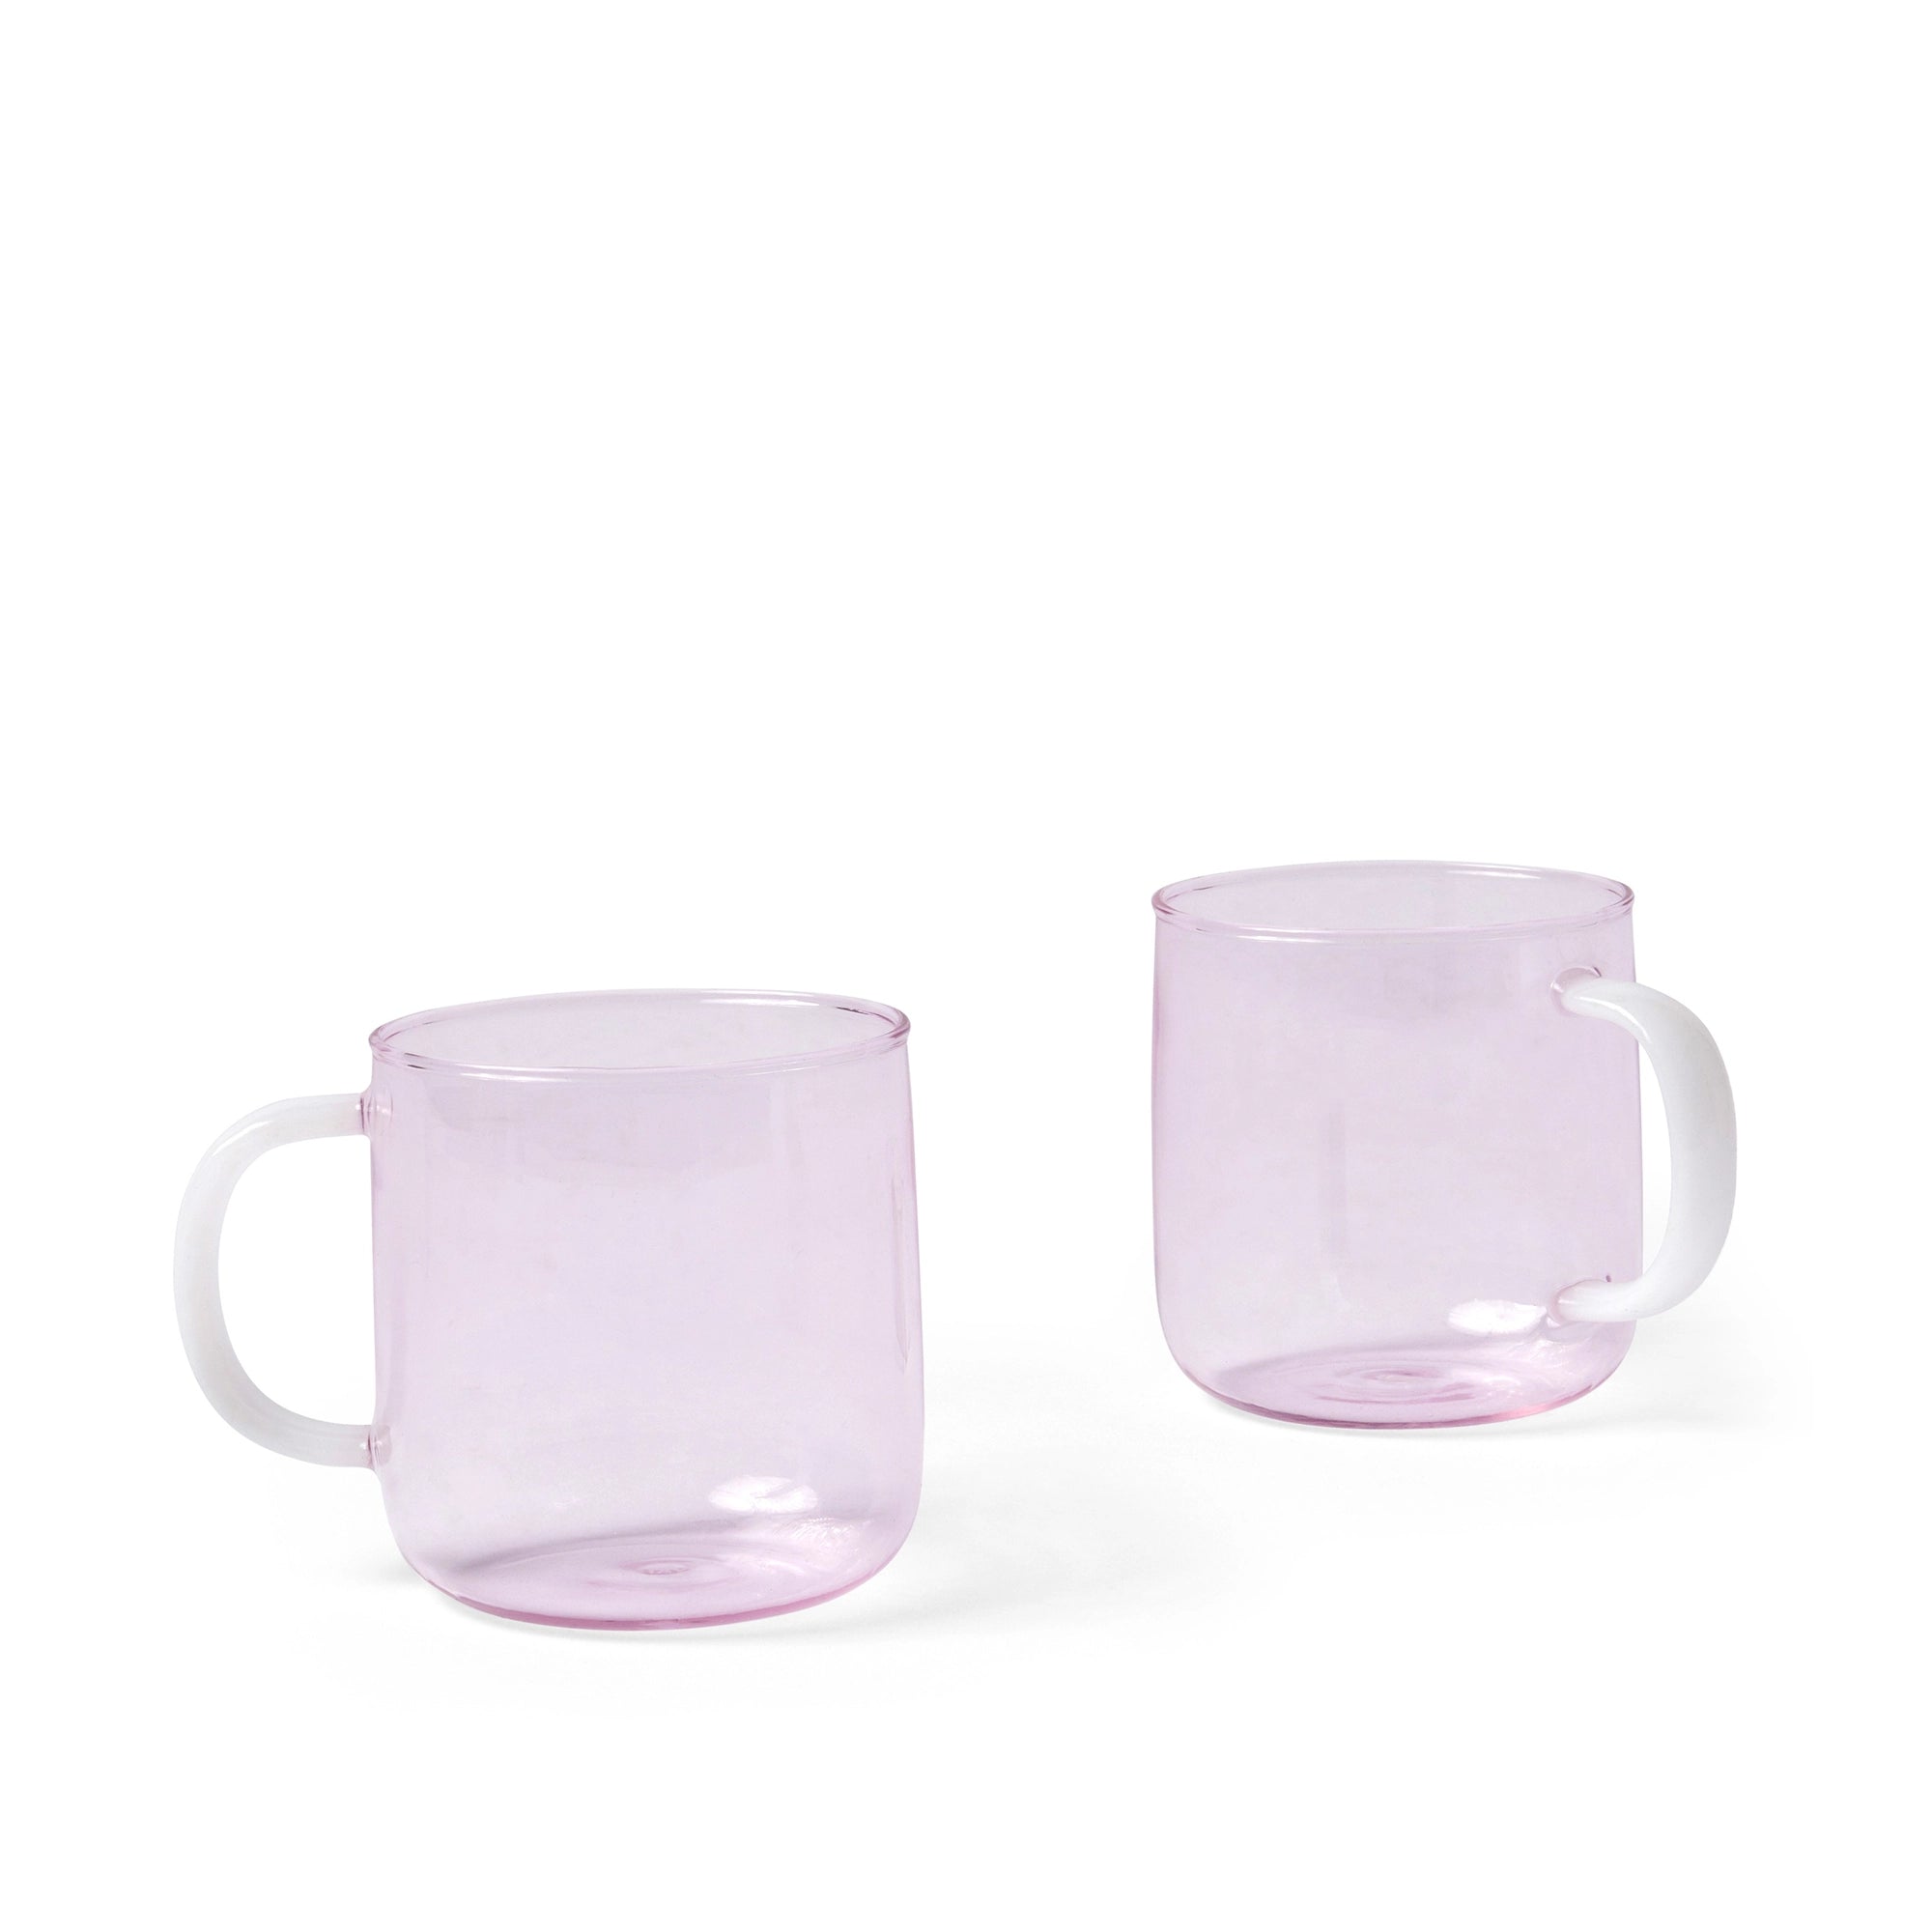 مجموعة من 2 كوب زجاجي بلوروسيليكات باللون الوردي مع مقبض أبيض